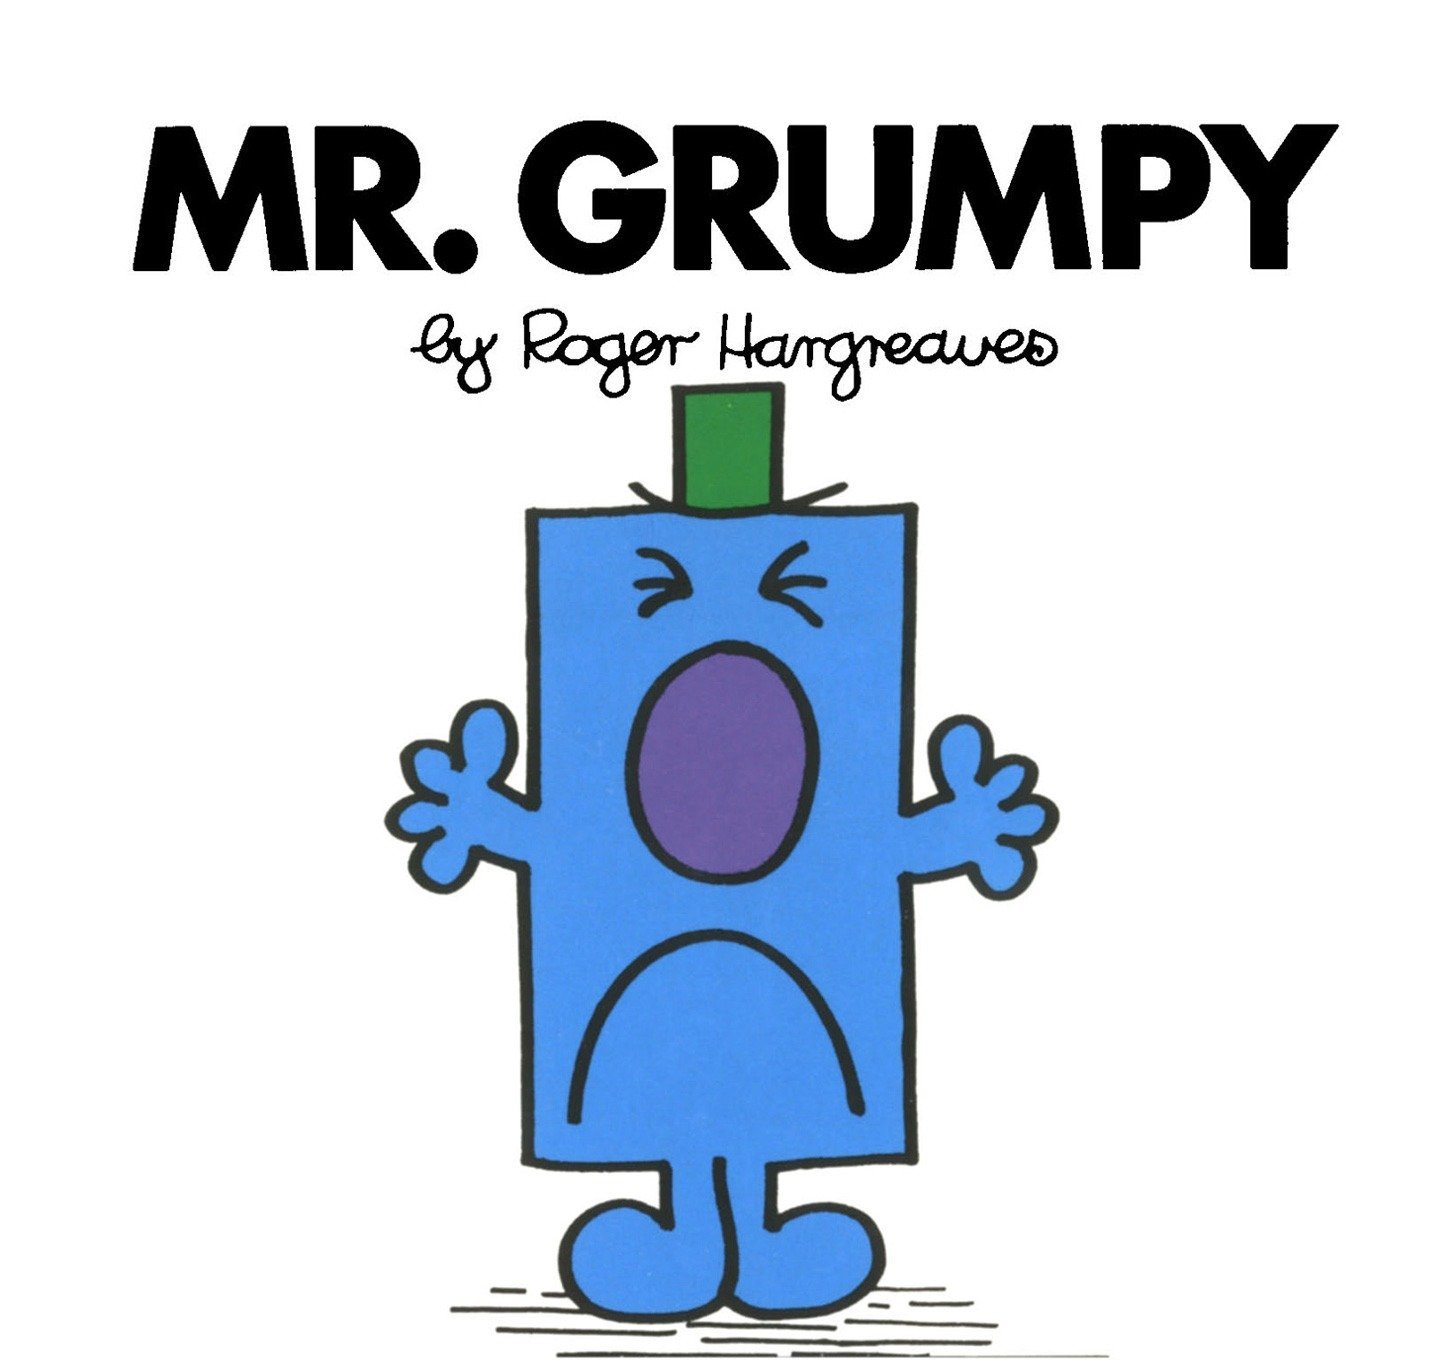 Mr. Grumpy - 27